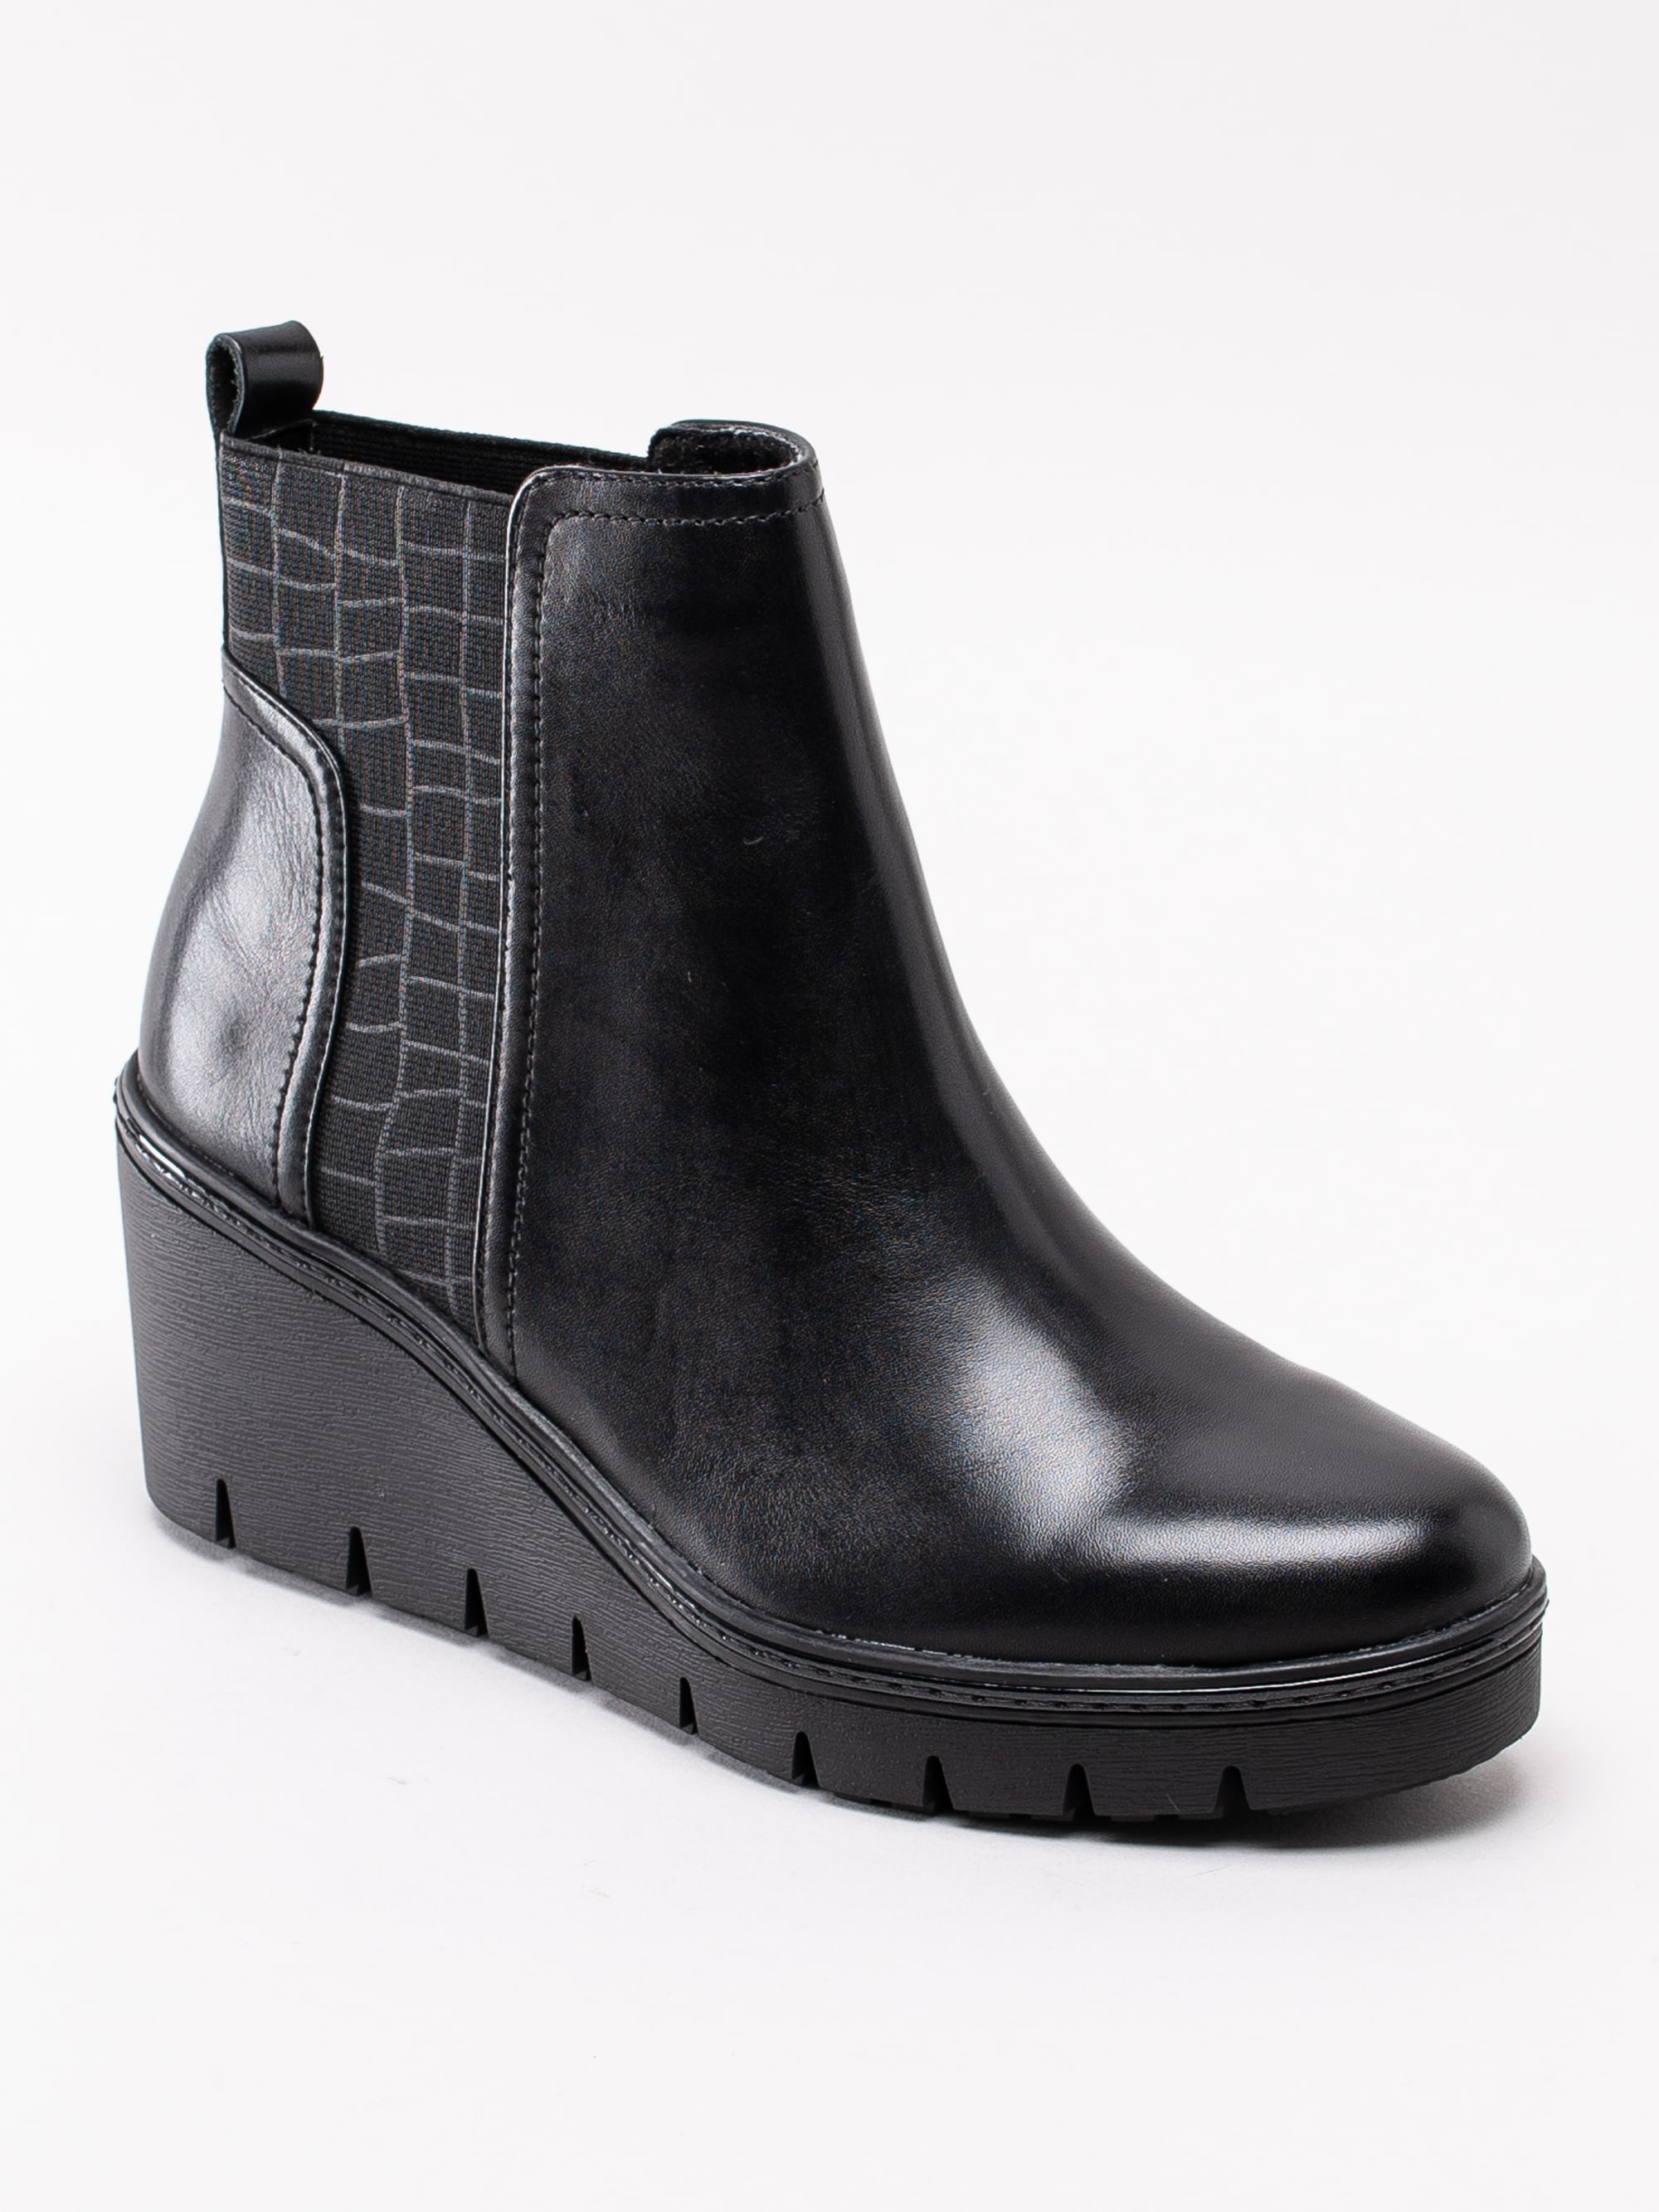 10193125 Tamaris 1-25430-23-001 svarta kilklackade platå boots med mönstrad resår-1